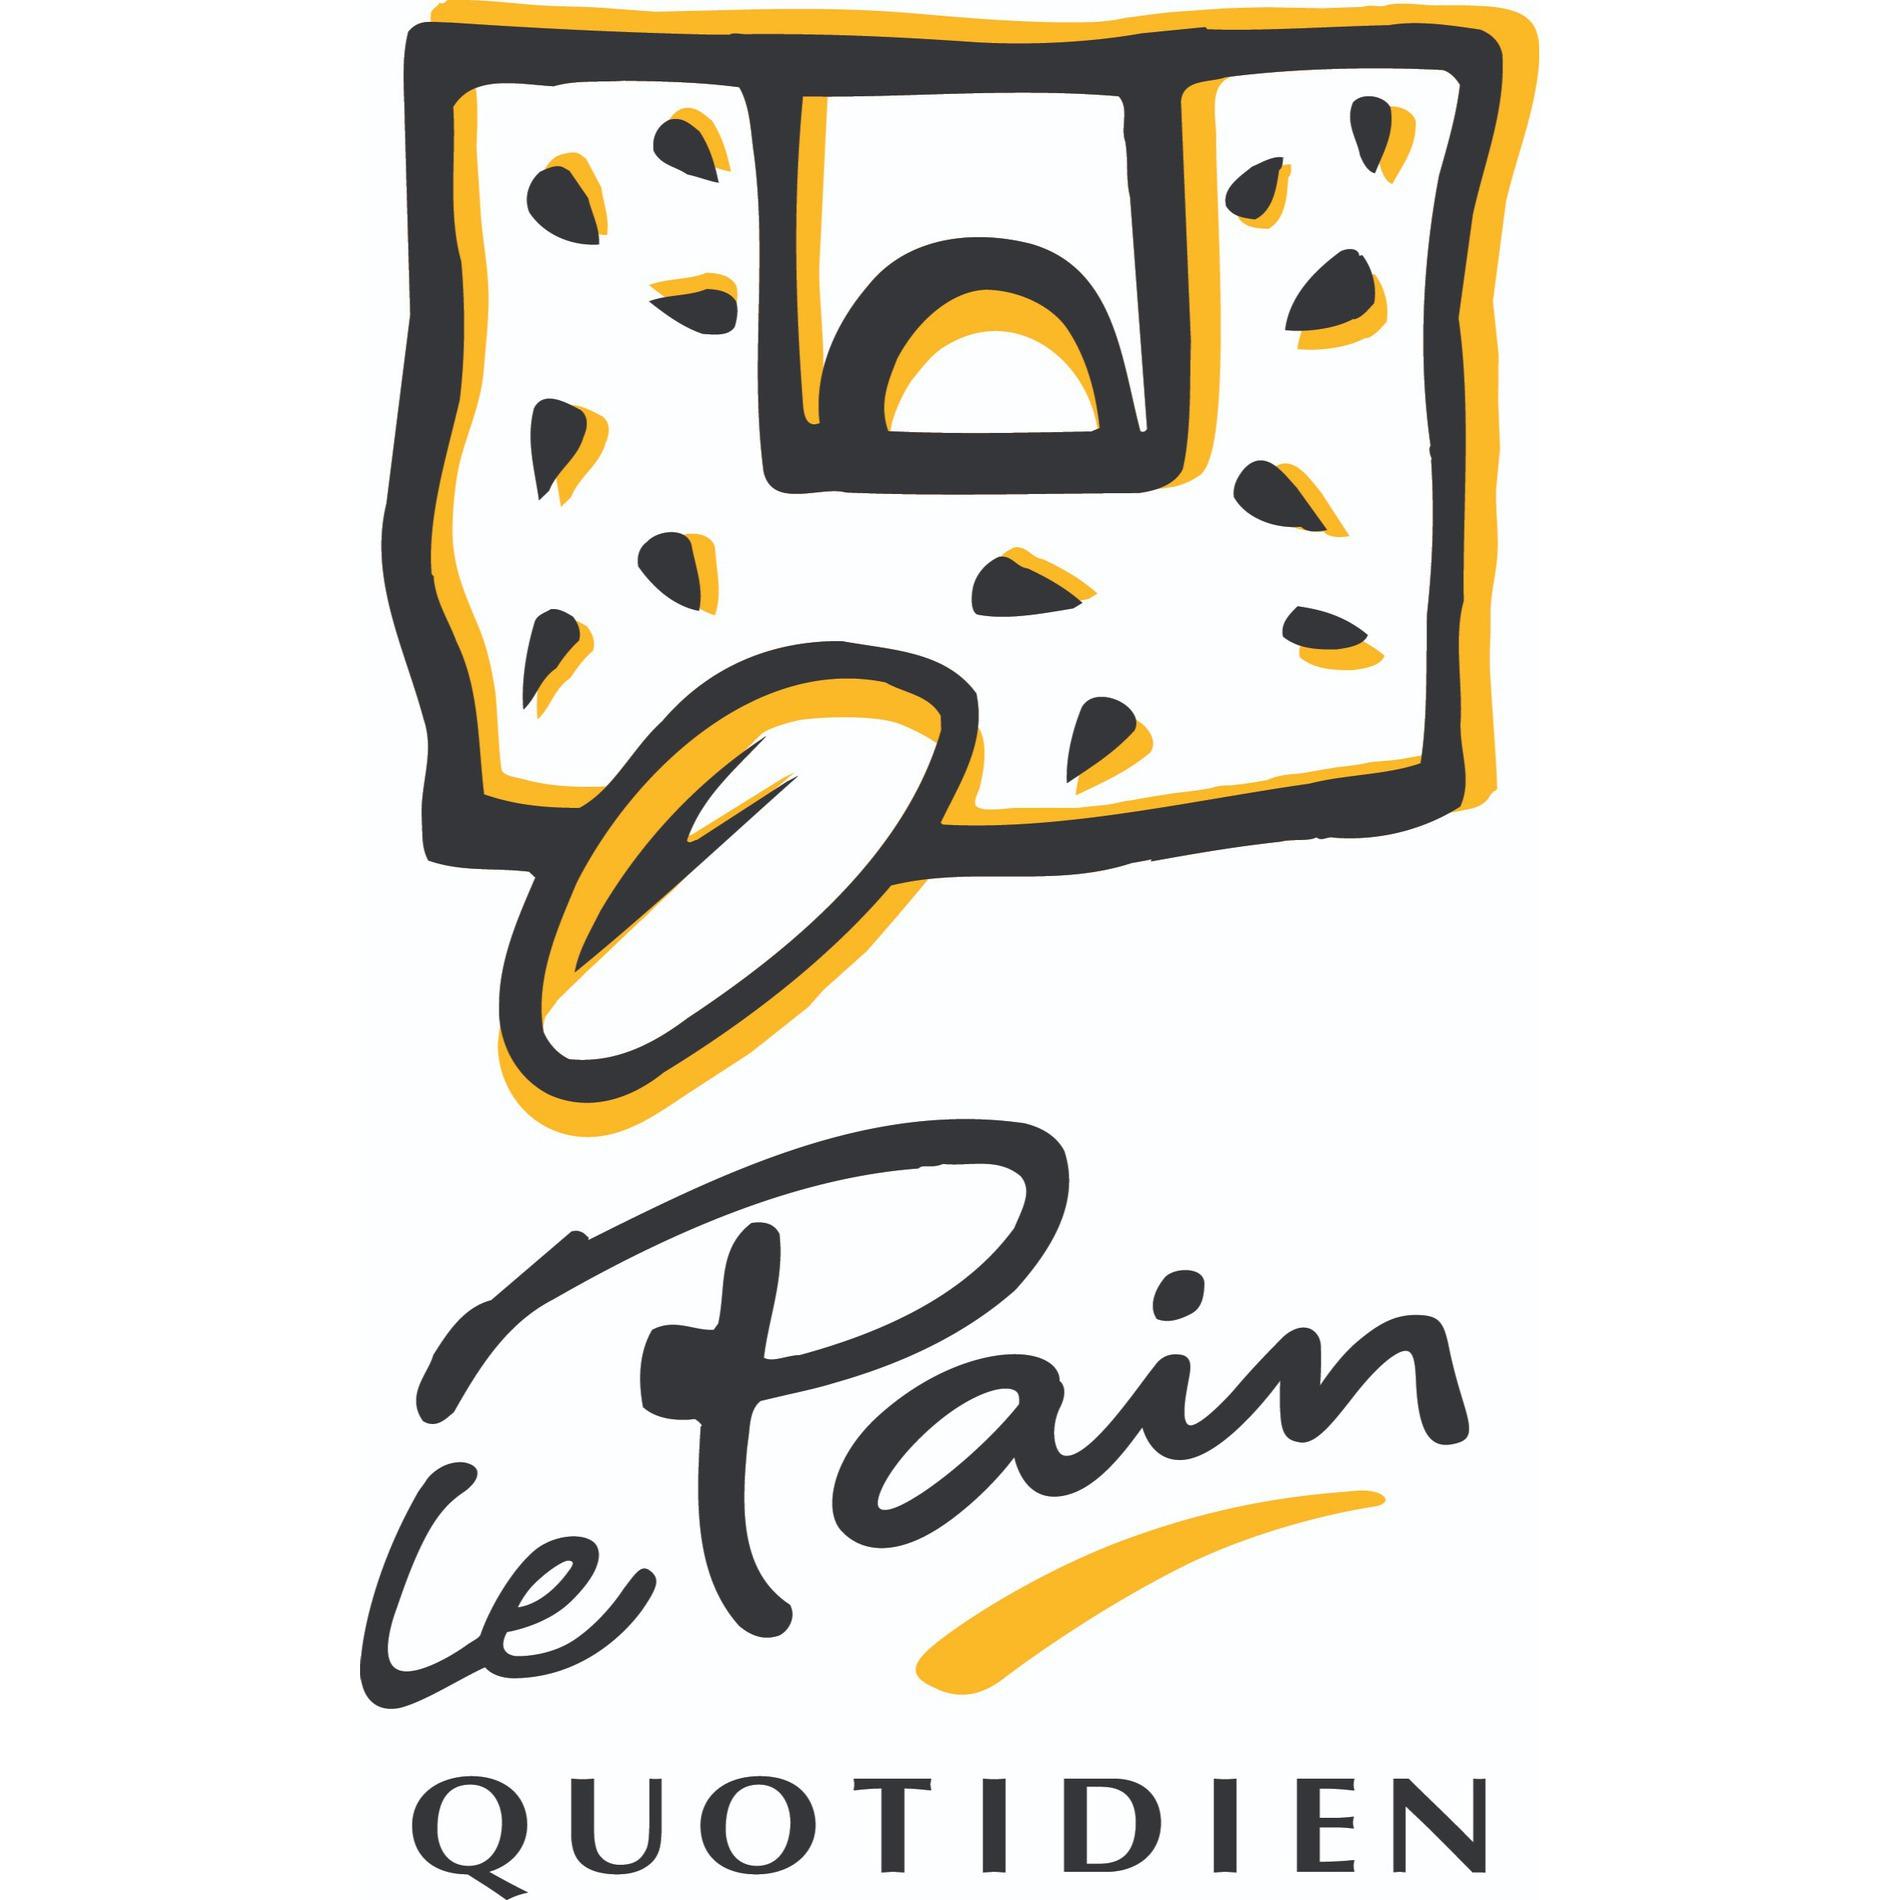 Le Pain Quotidien Logo